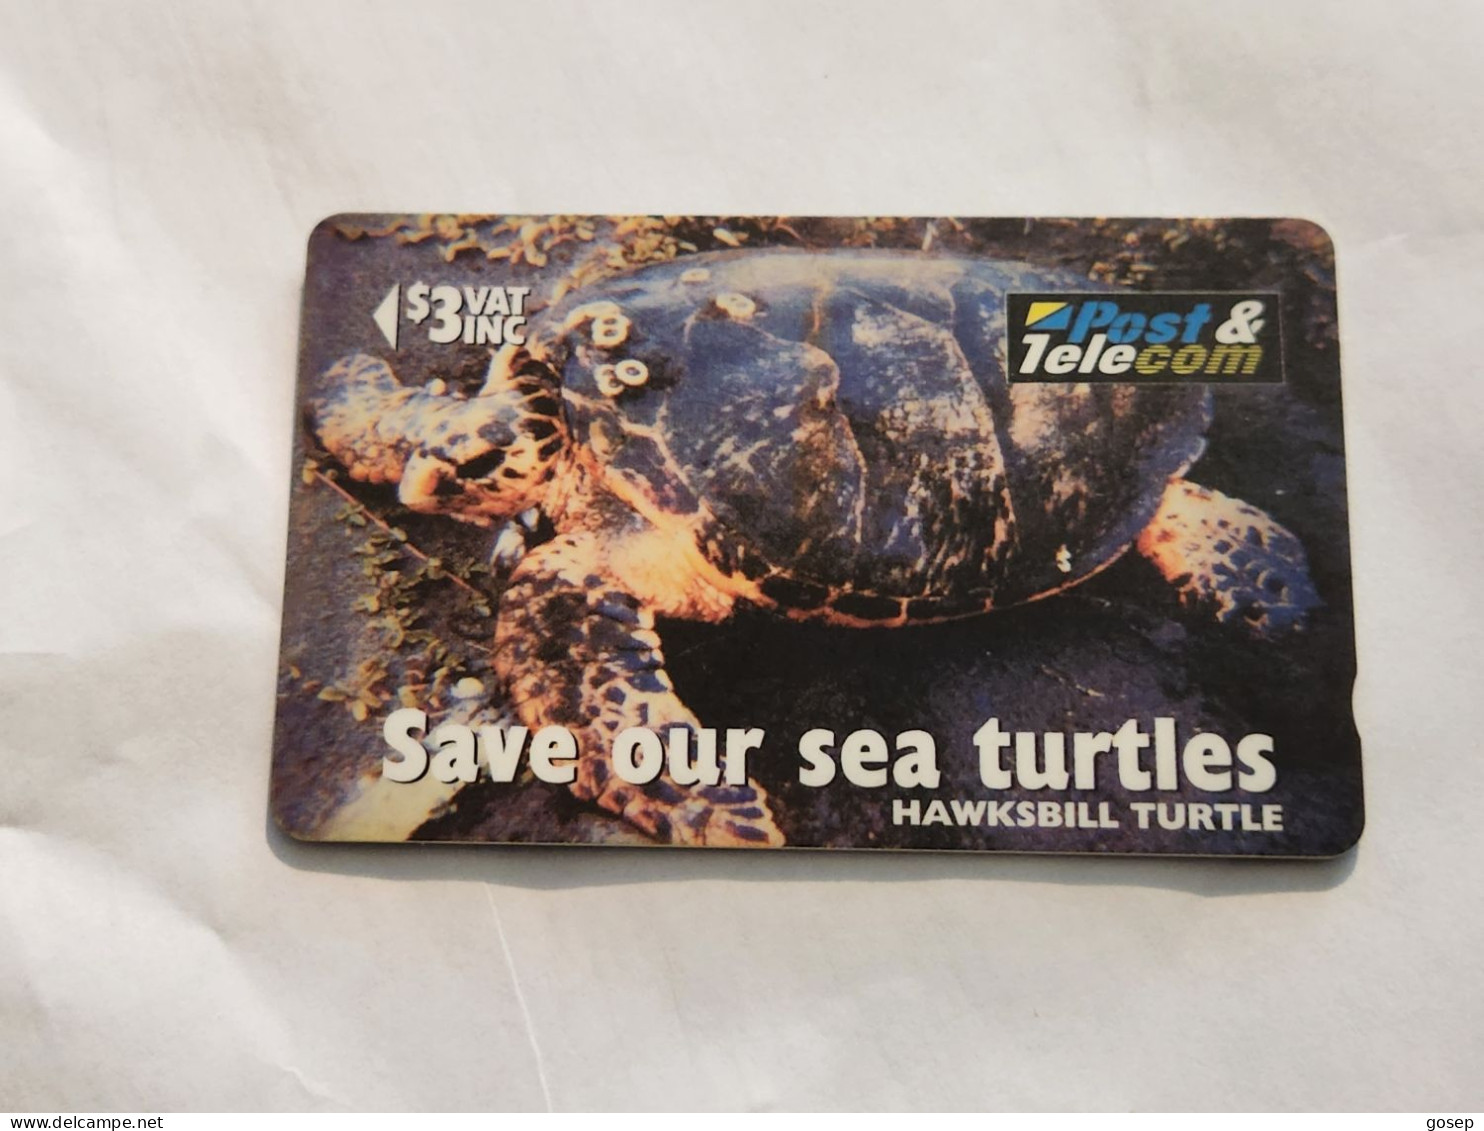 FiGI-(17FIB-FIJ-083)-"Hawks I'll Turtle"Taku-(77)(1996)-($3)-(17FIB042587)-(TIRAGE-55.000)-used Card+1card Prepiad Free - Fiji